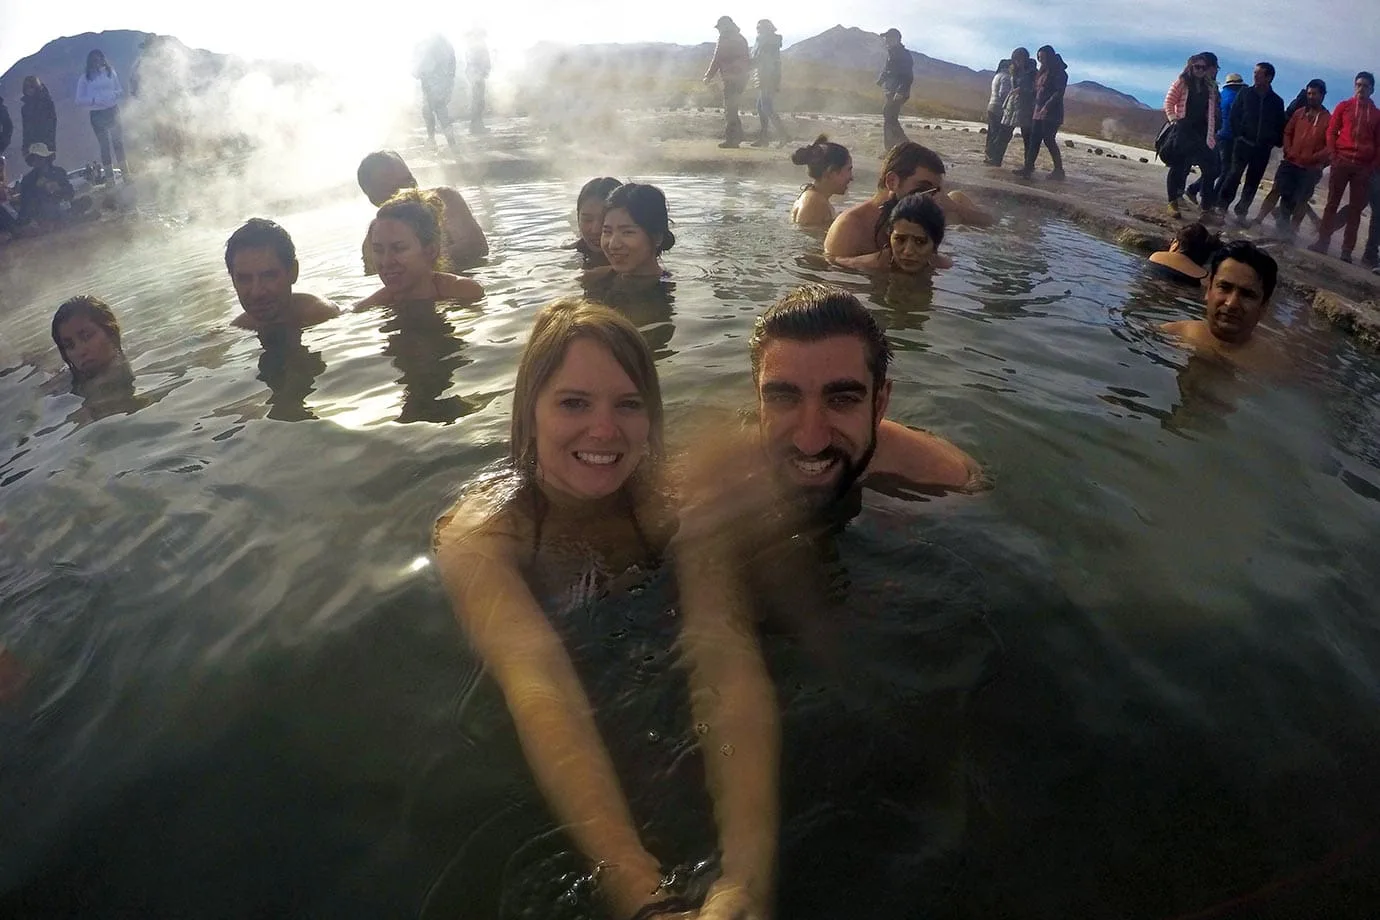 Geothermal pool at El Tatio geysers, Chile